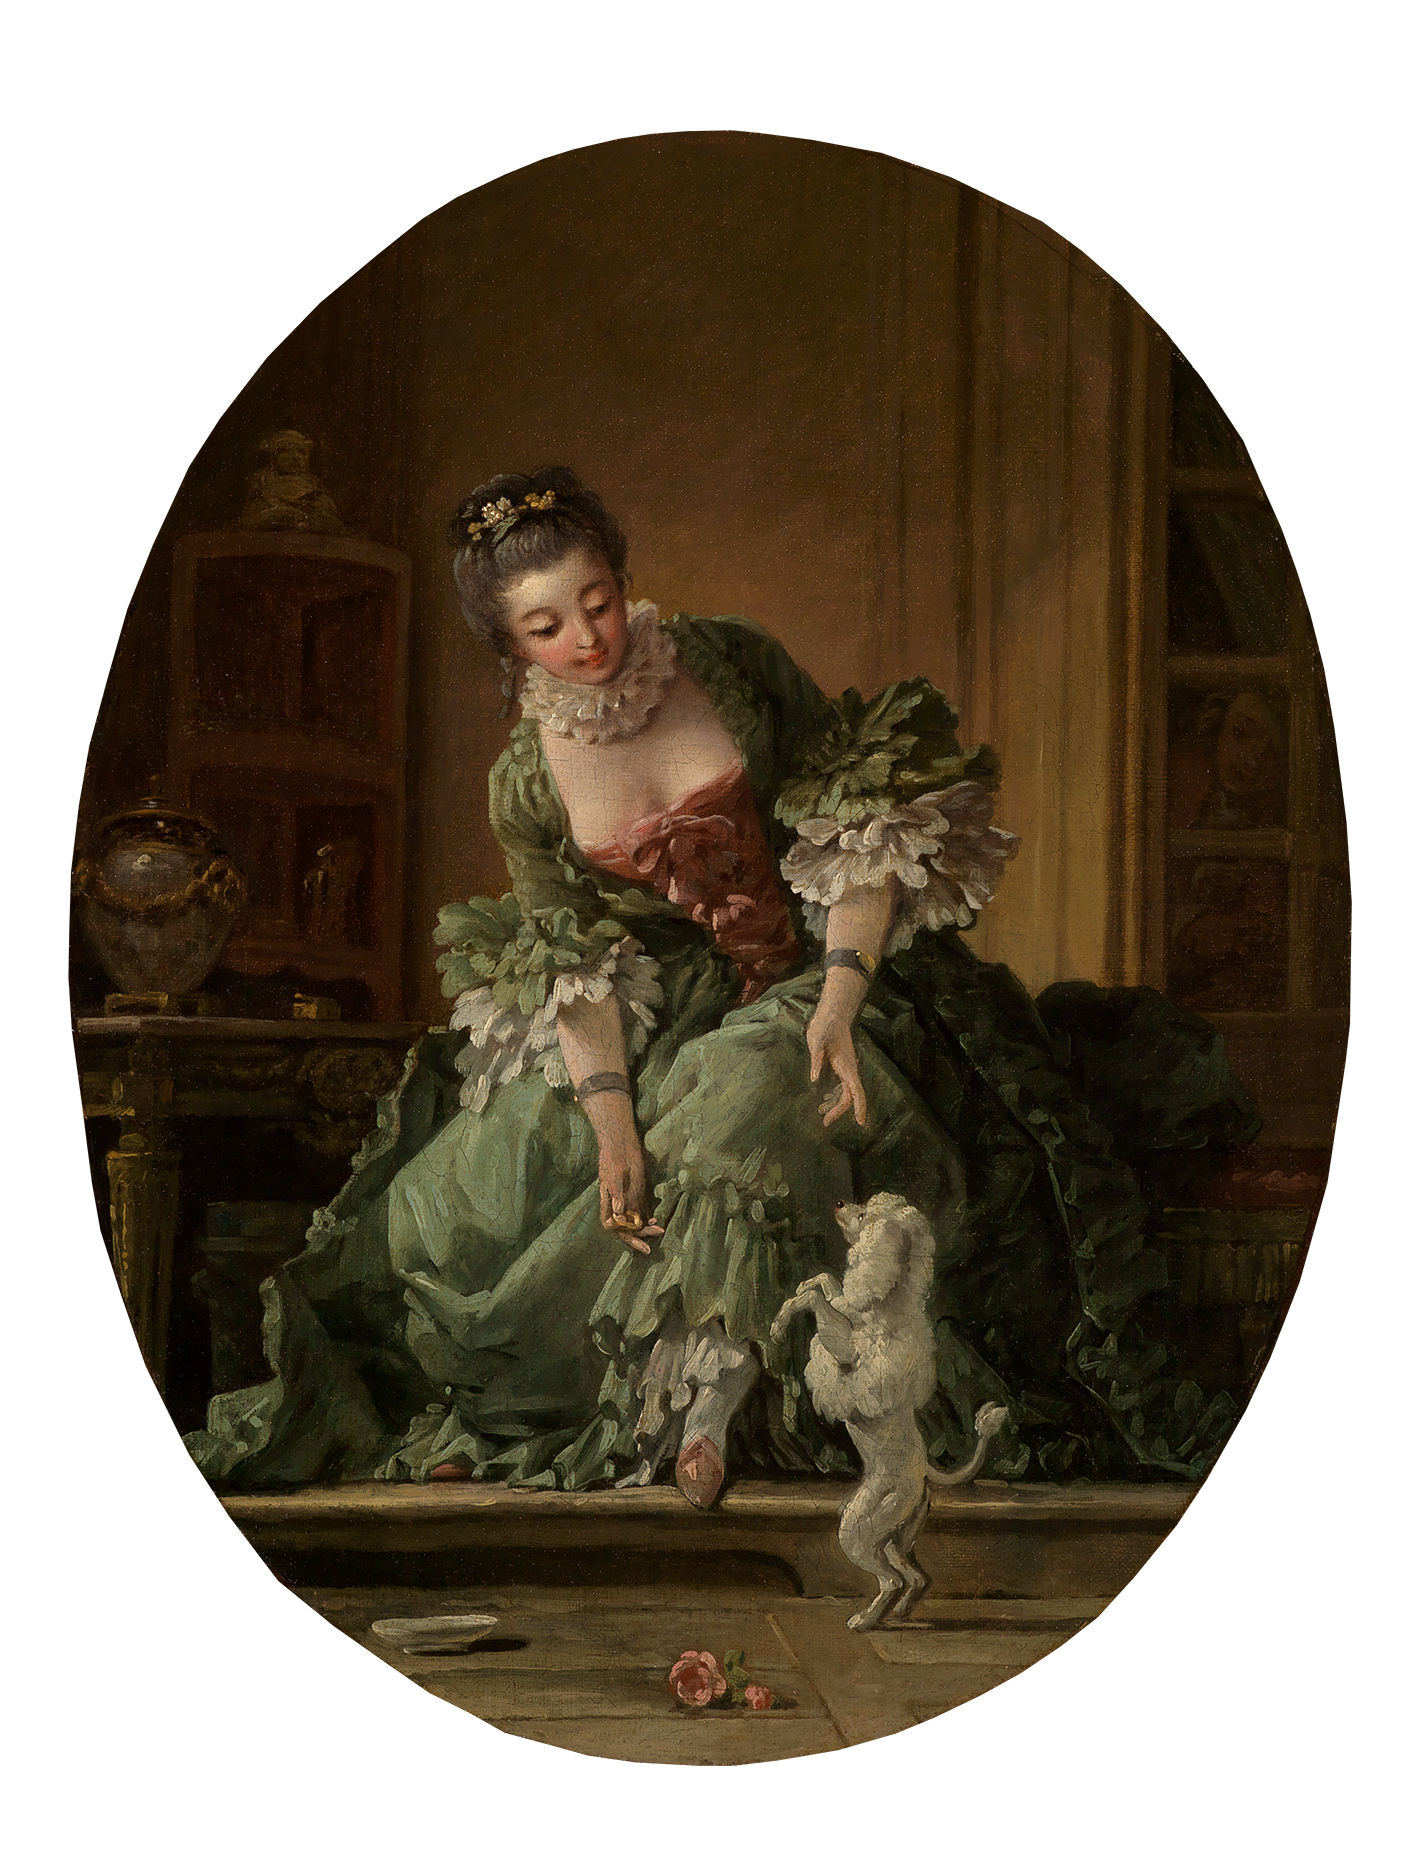 Gemälde von François Boucher, auf dem eine junge Frau in Rokoko-Kleidung zu sehen ist, die ihrem Hund ein Kunststück beibringt.